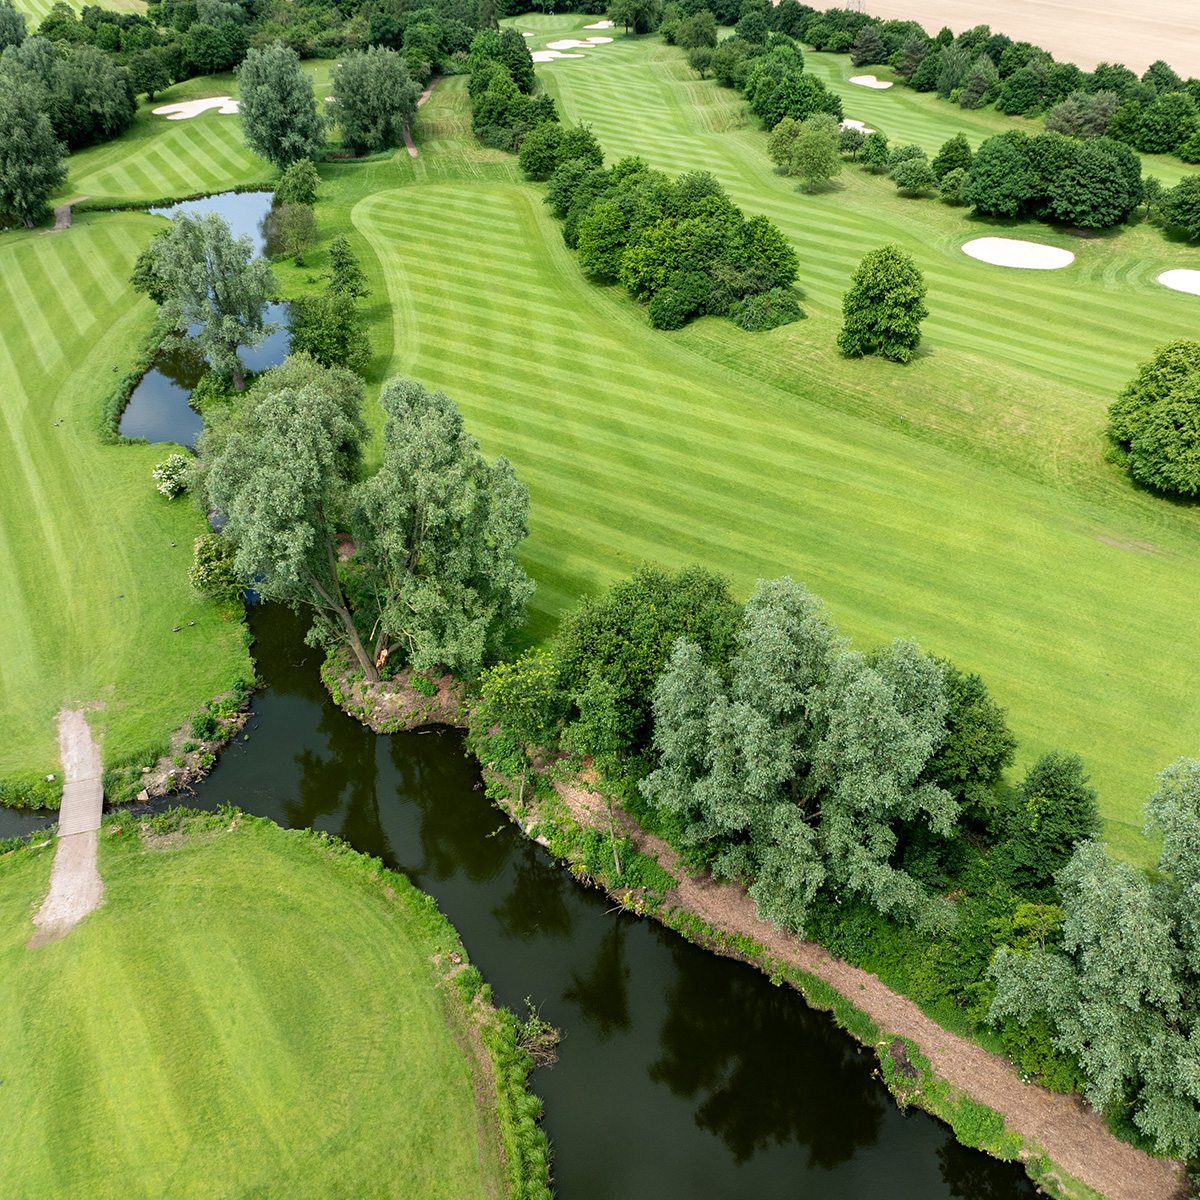 Ein weiteres Luftbild eines Golfplatzes mit klar definierten Fairways und kleinen Teichen, die die Bahnen säumen. Im Vordergrund steht ein Golfer auf dem Grün.